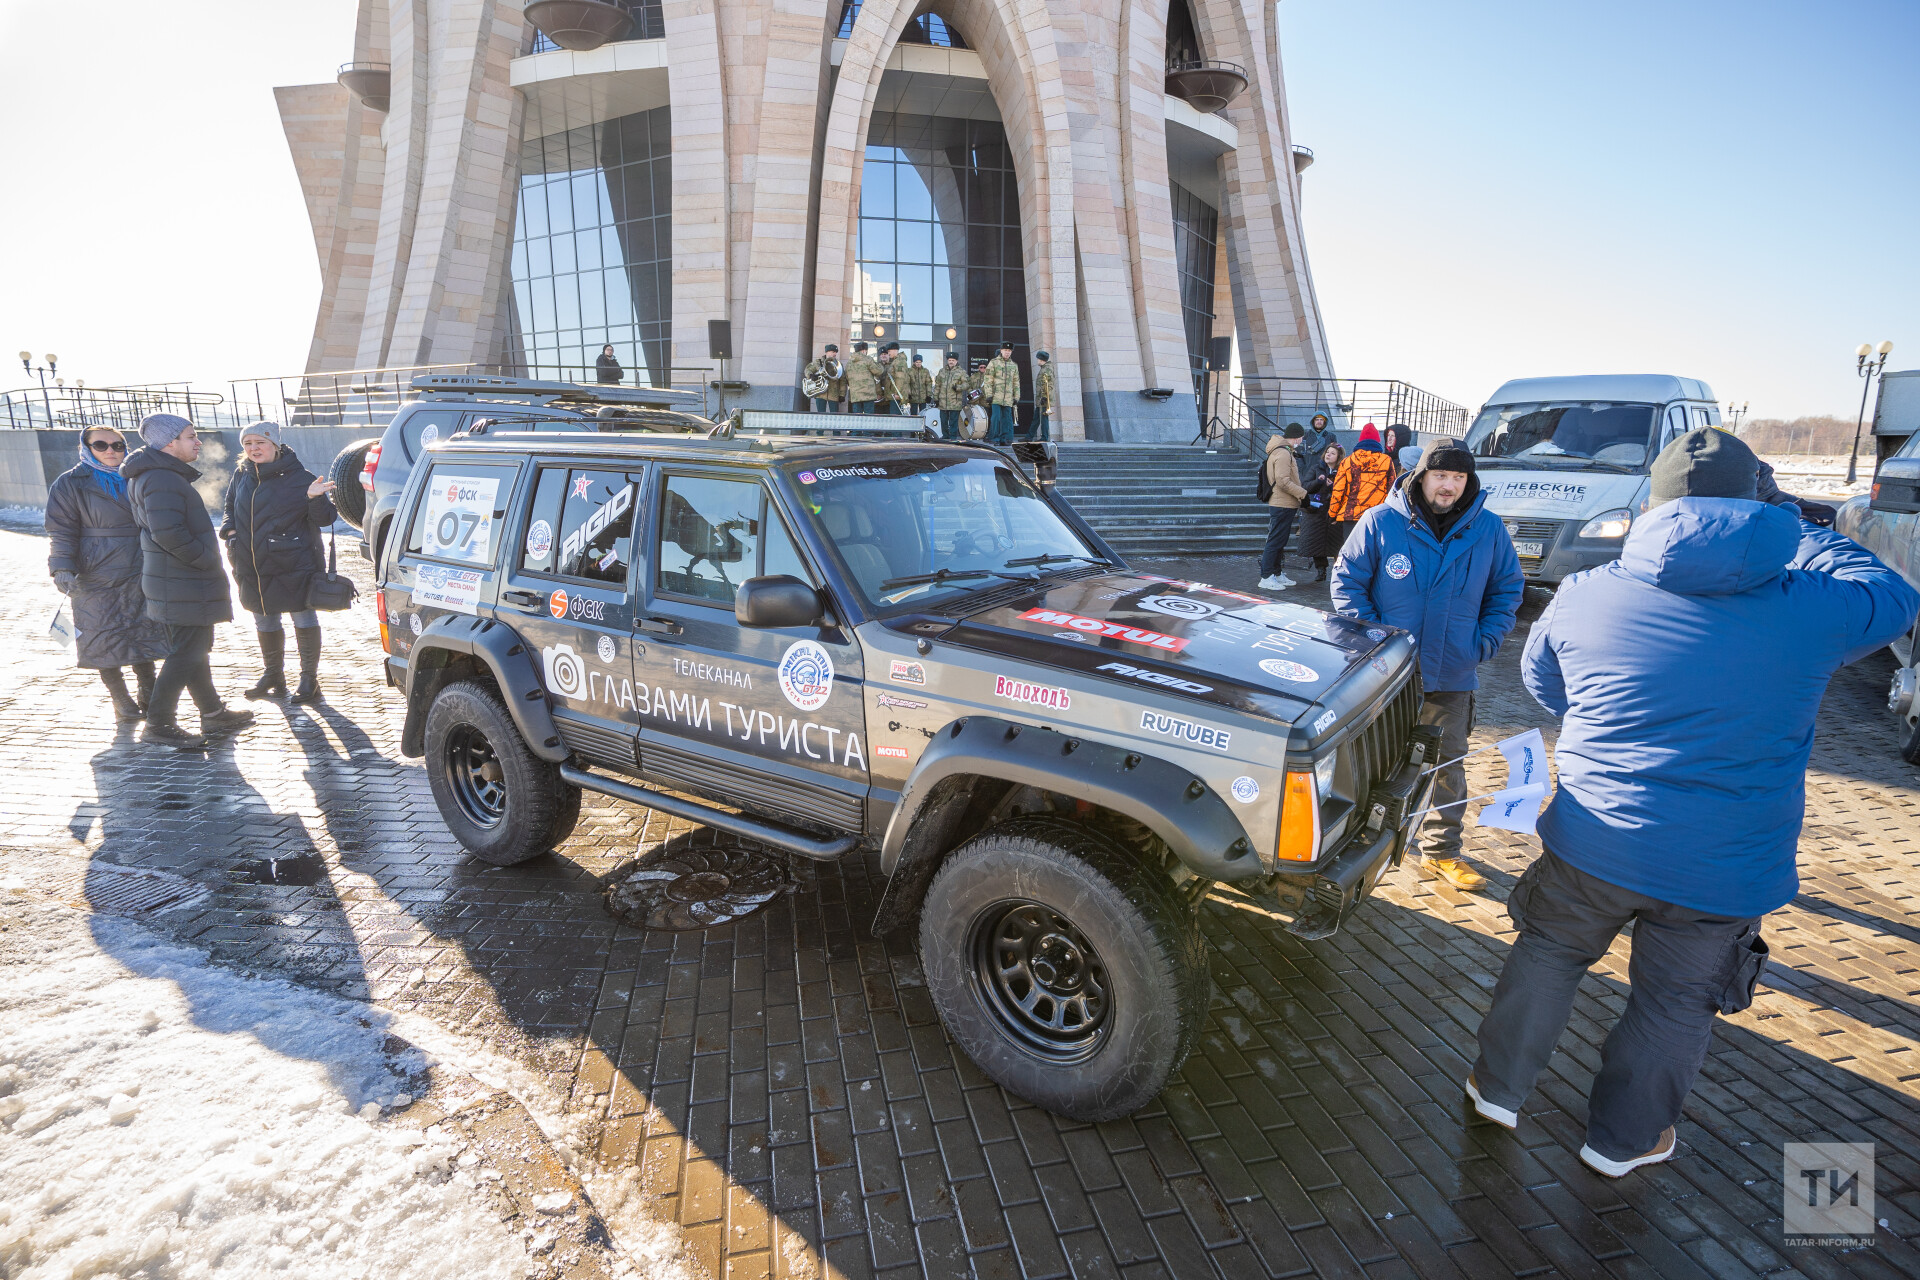 «Задача – посетить места силы»: в Казани встретились участники автопробега до Байкала